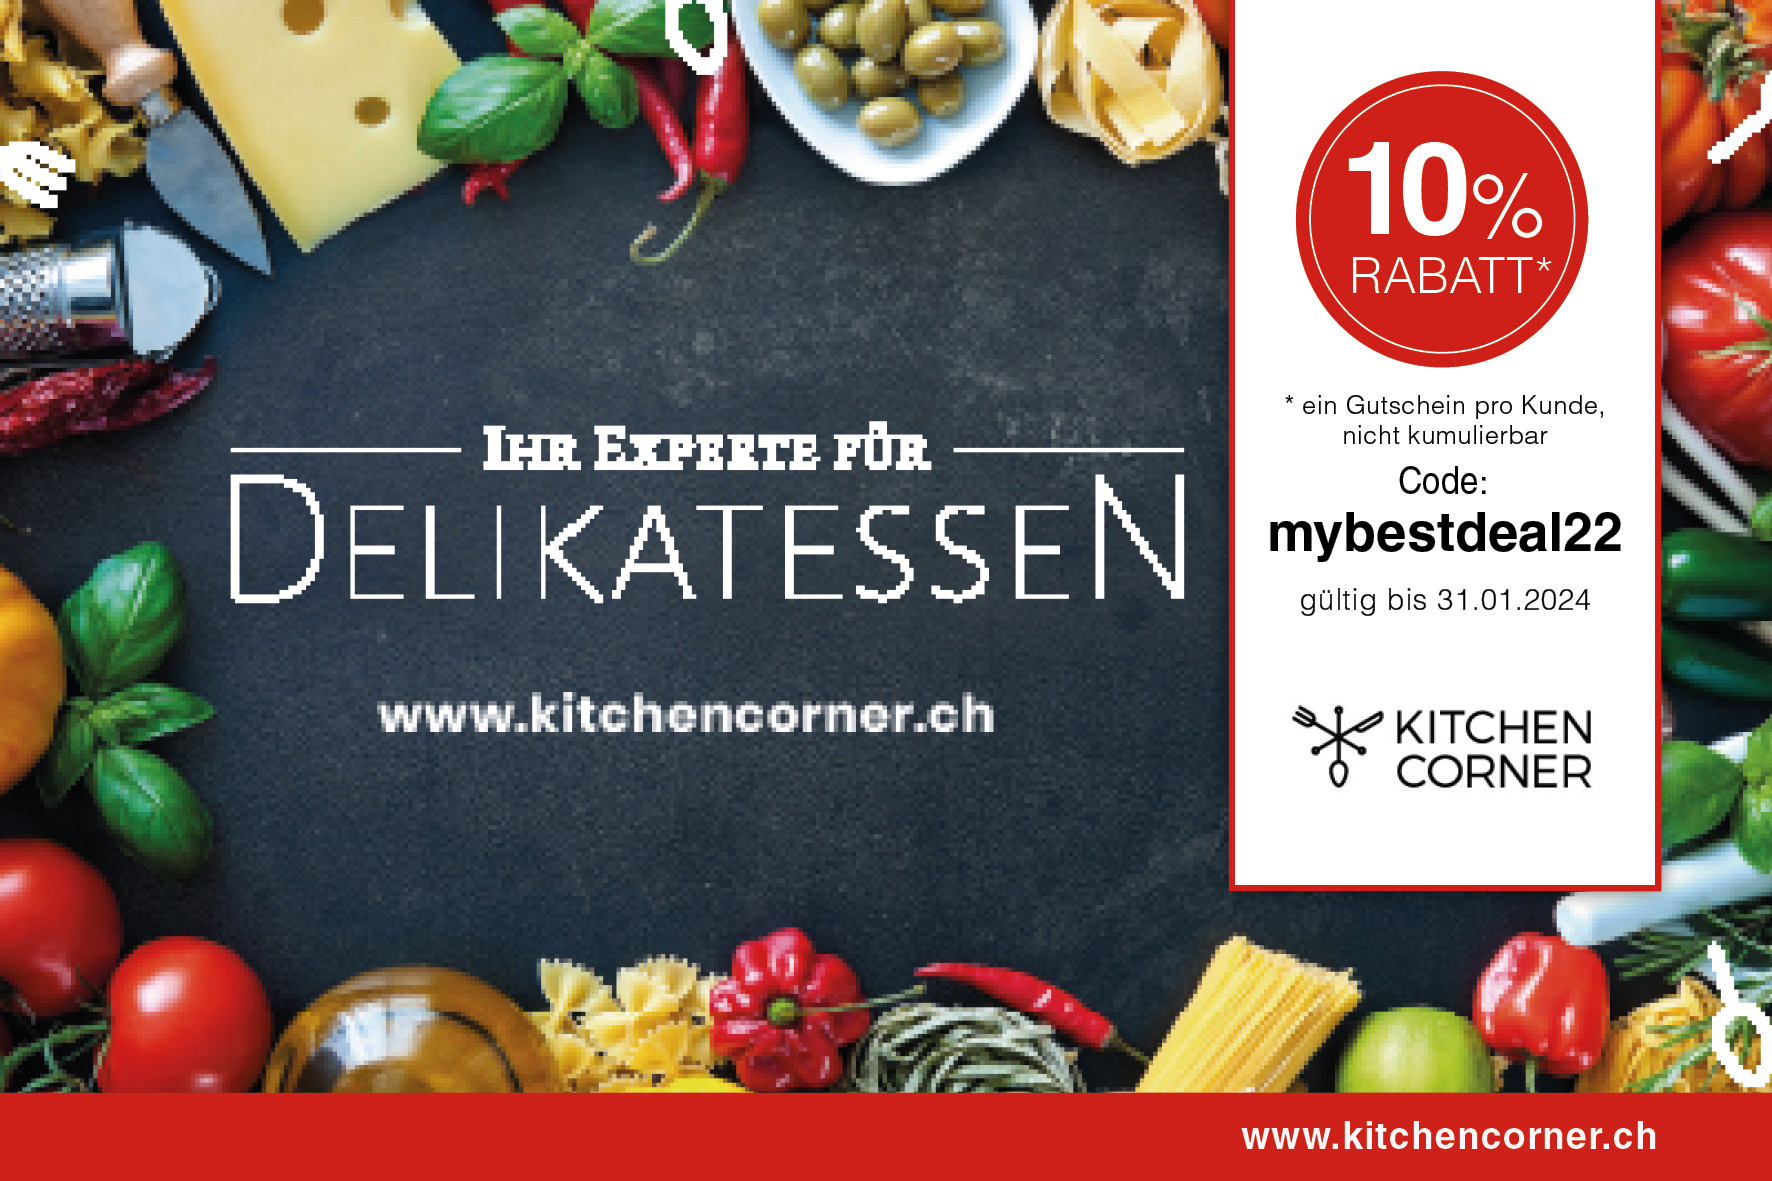 rabattcode kitchencorner hj231 - Gutscheincodes für Schweizer Onlineshops